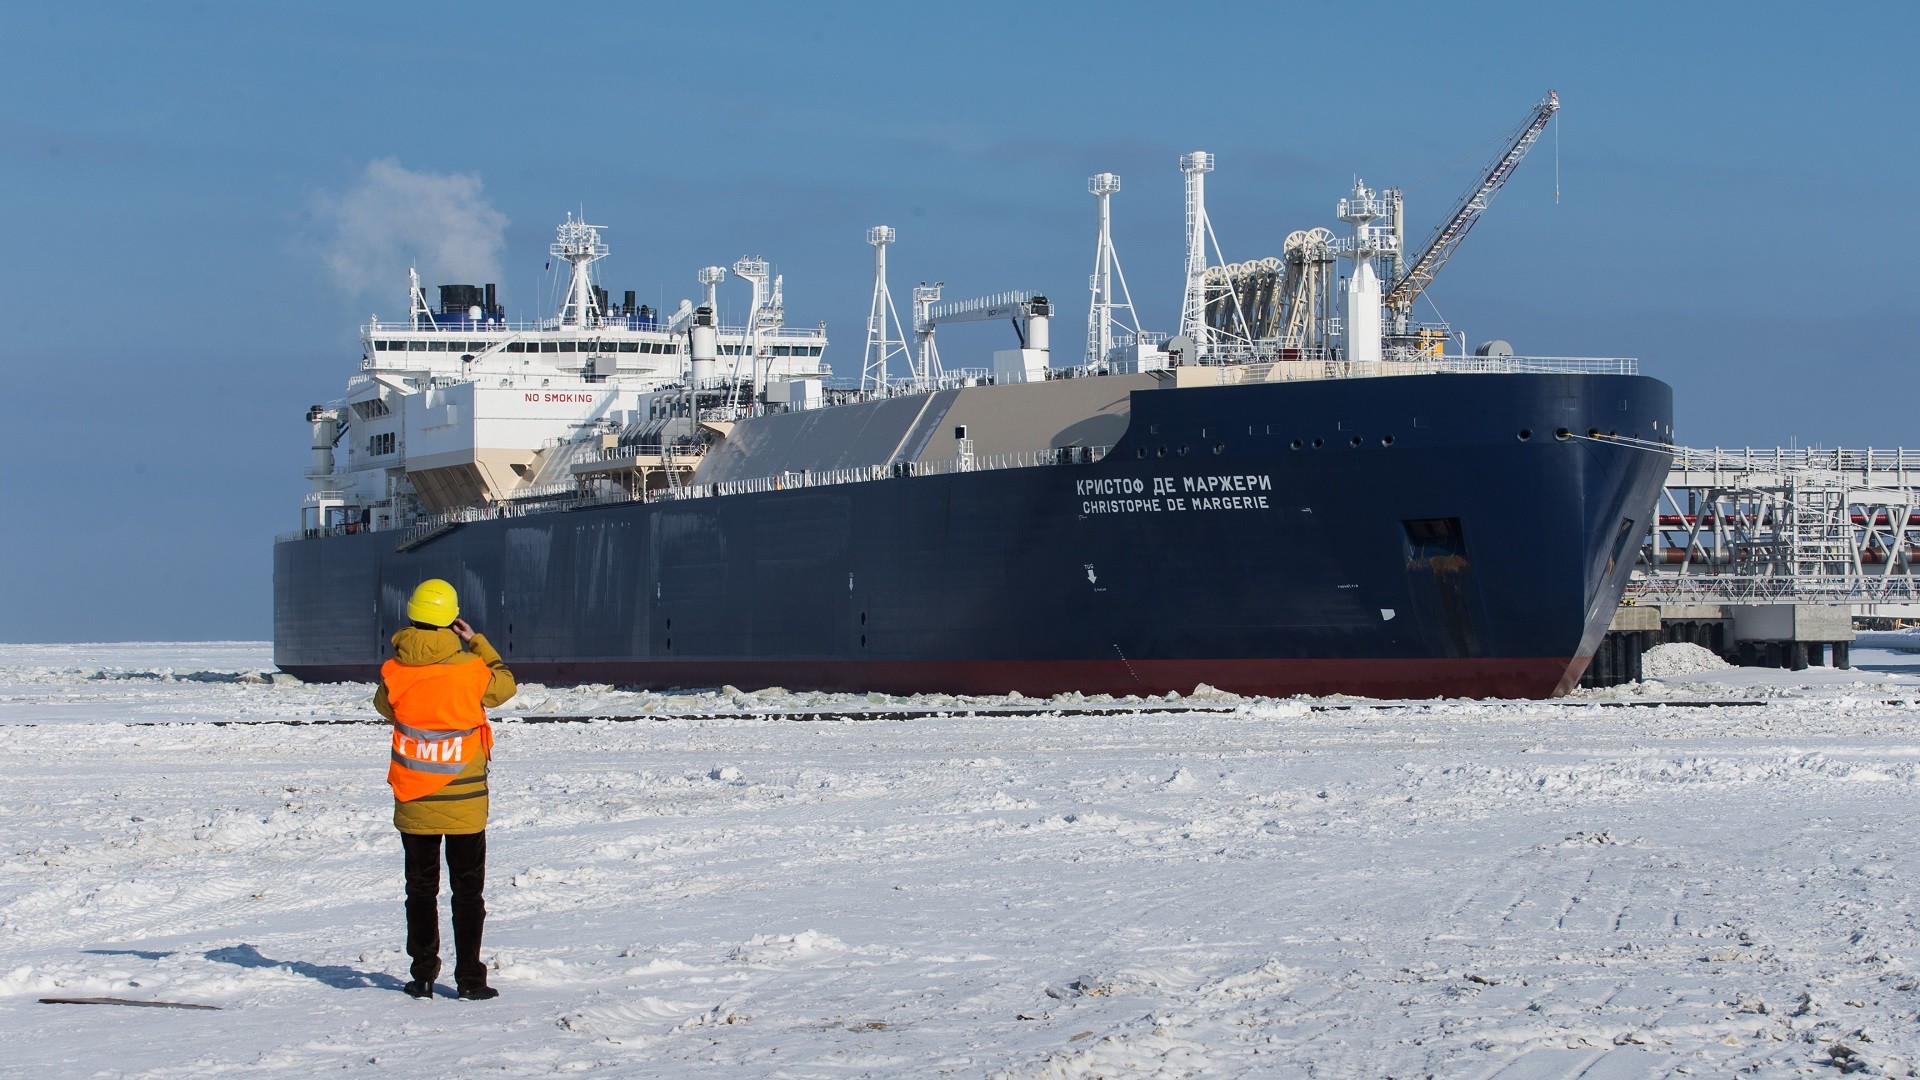 Le méthanier brise-glace "Christophe de Margerie" dans le port de Sabetta, desservant l'usine Yamal-LNG, dans le Grand Nord russe